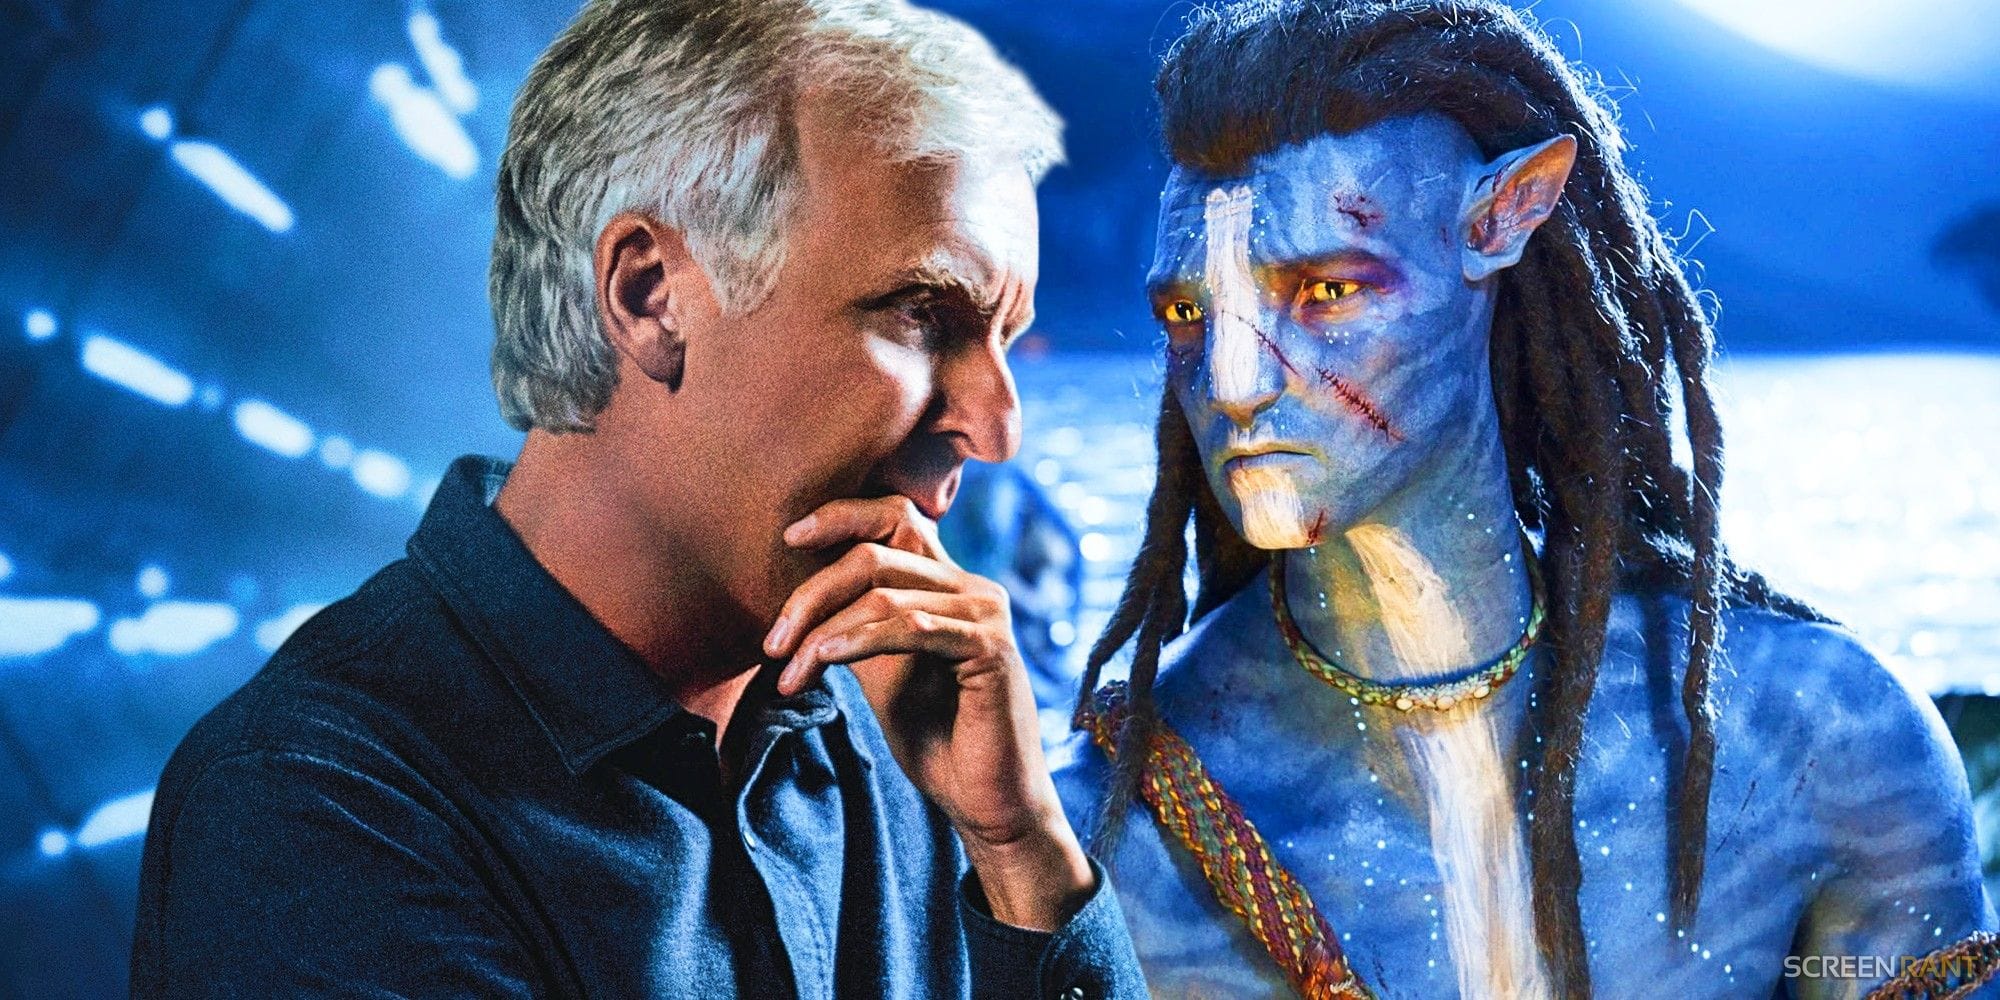 Trailer chính thức Avatar 2 ra mắt khán giả có gì đặc biệt